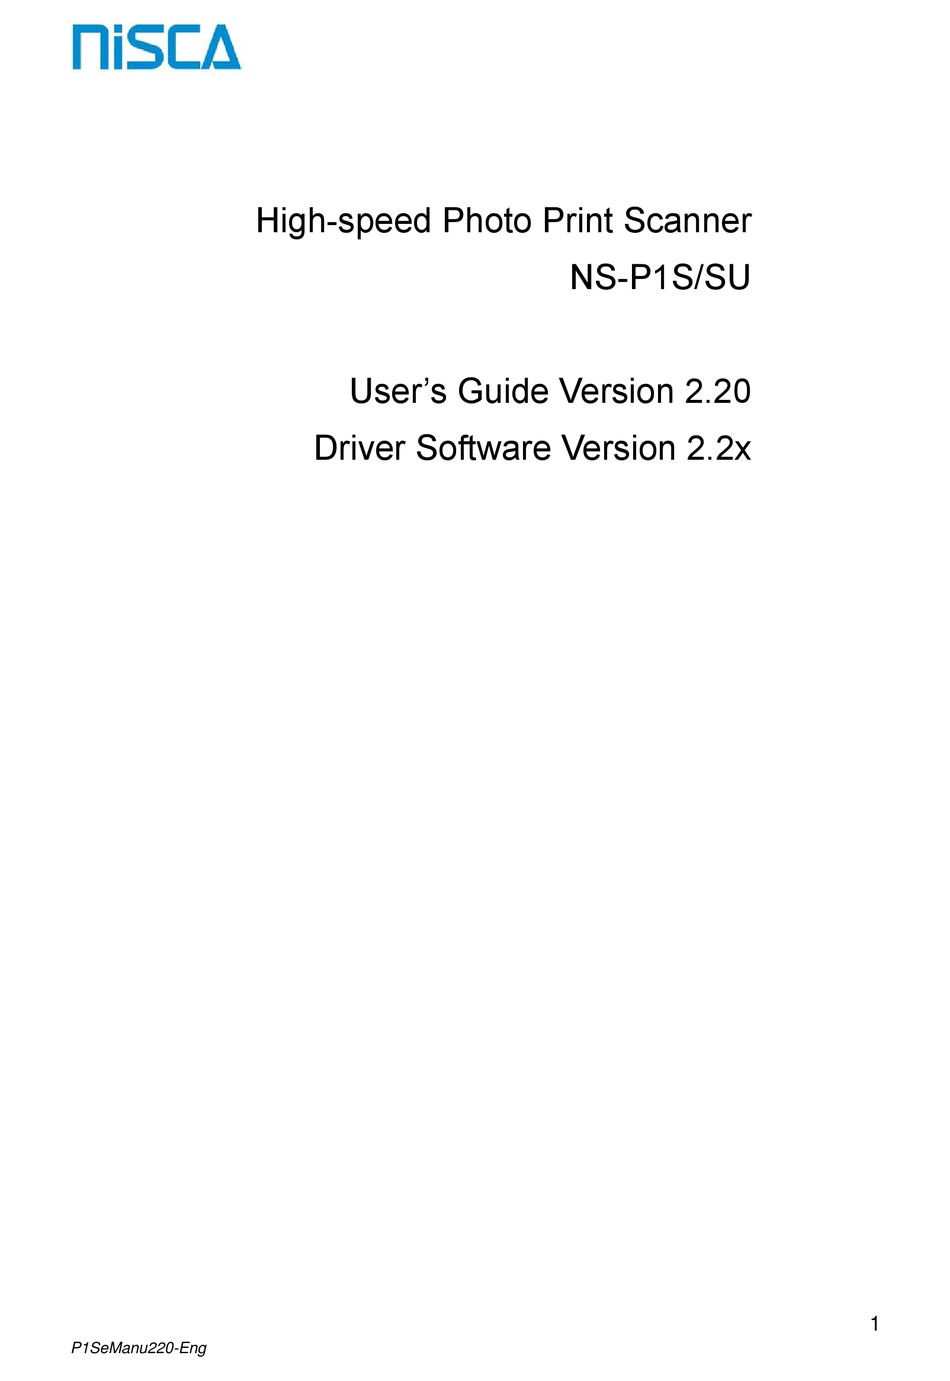 Nisca NS-P1SU High Speed High Resolution Photo Scanner Station 